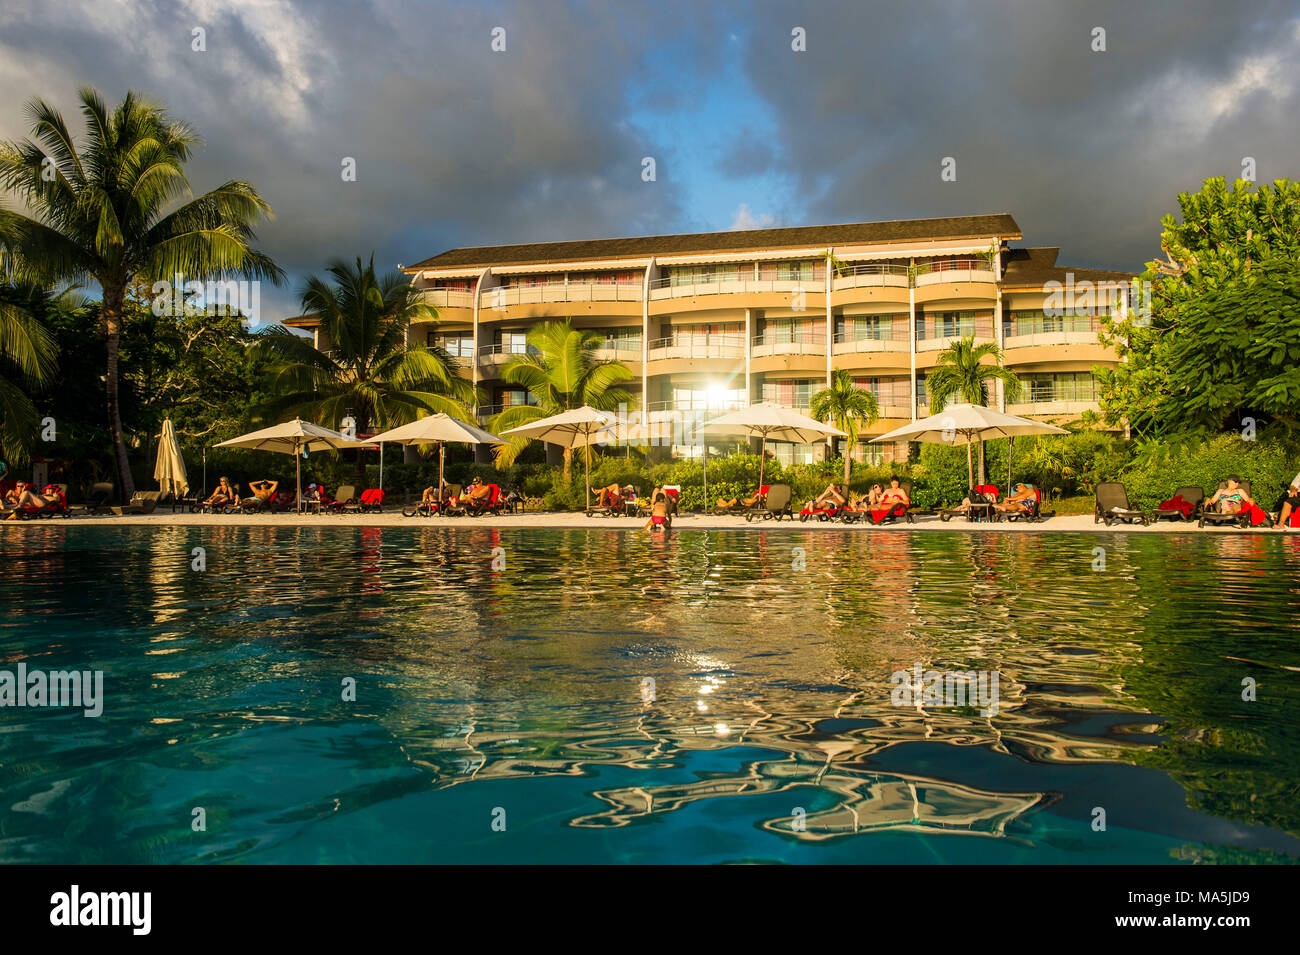 Luxury hotel, Papeete, Tahiti, French Polynesia Stock Photo